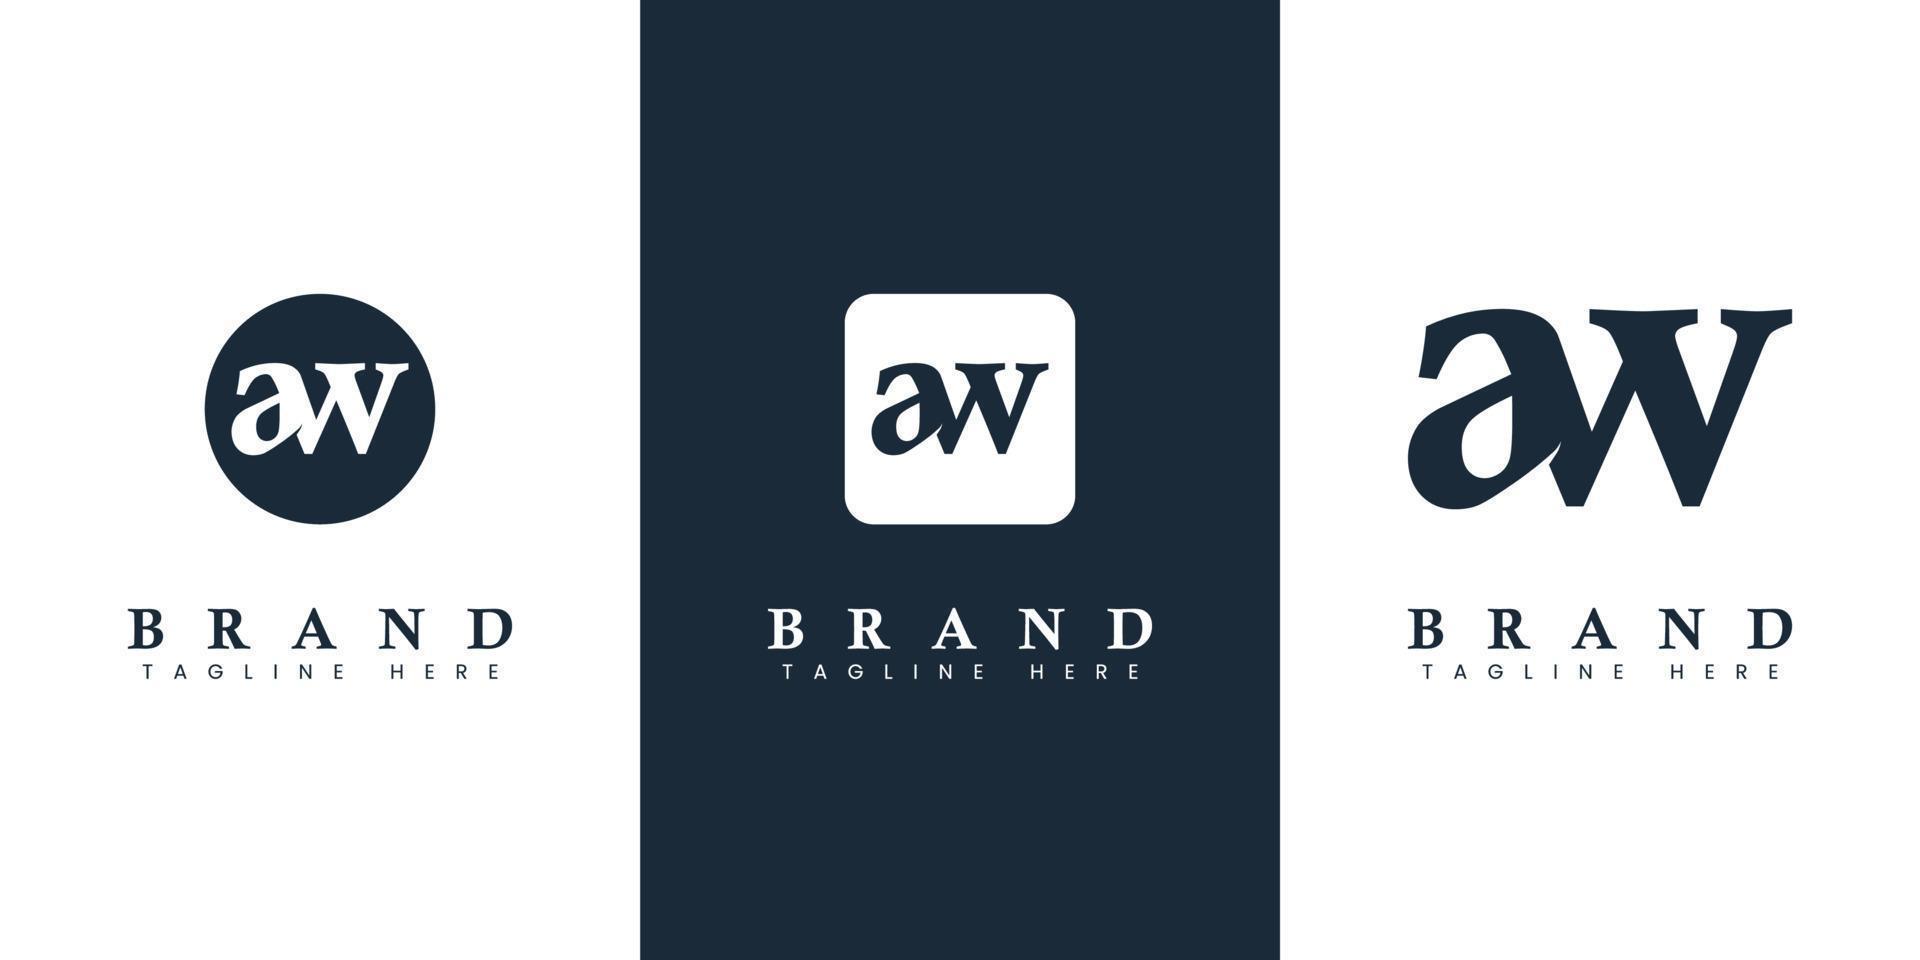 moderno e simples minúsculas aw carta logotipo, adequado para qualquer o negócio com aw ou wa iniciais. vetor